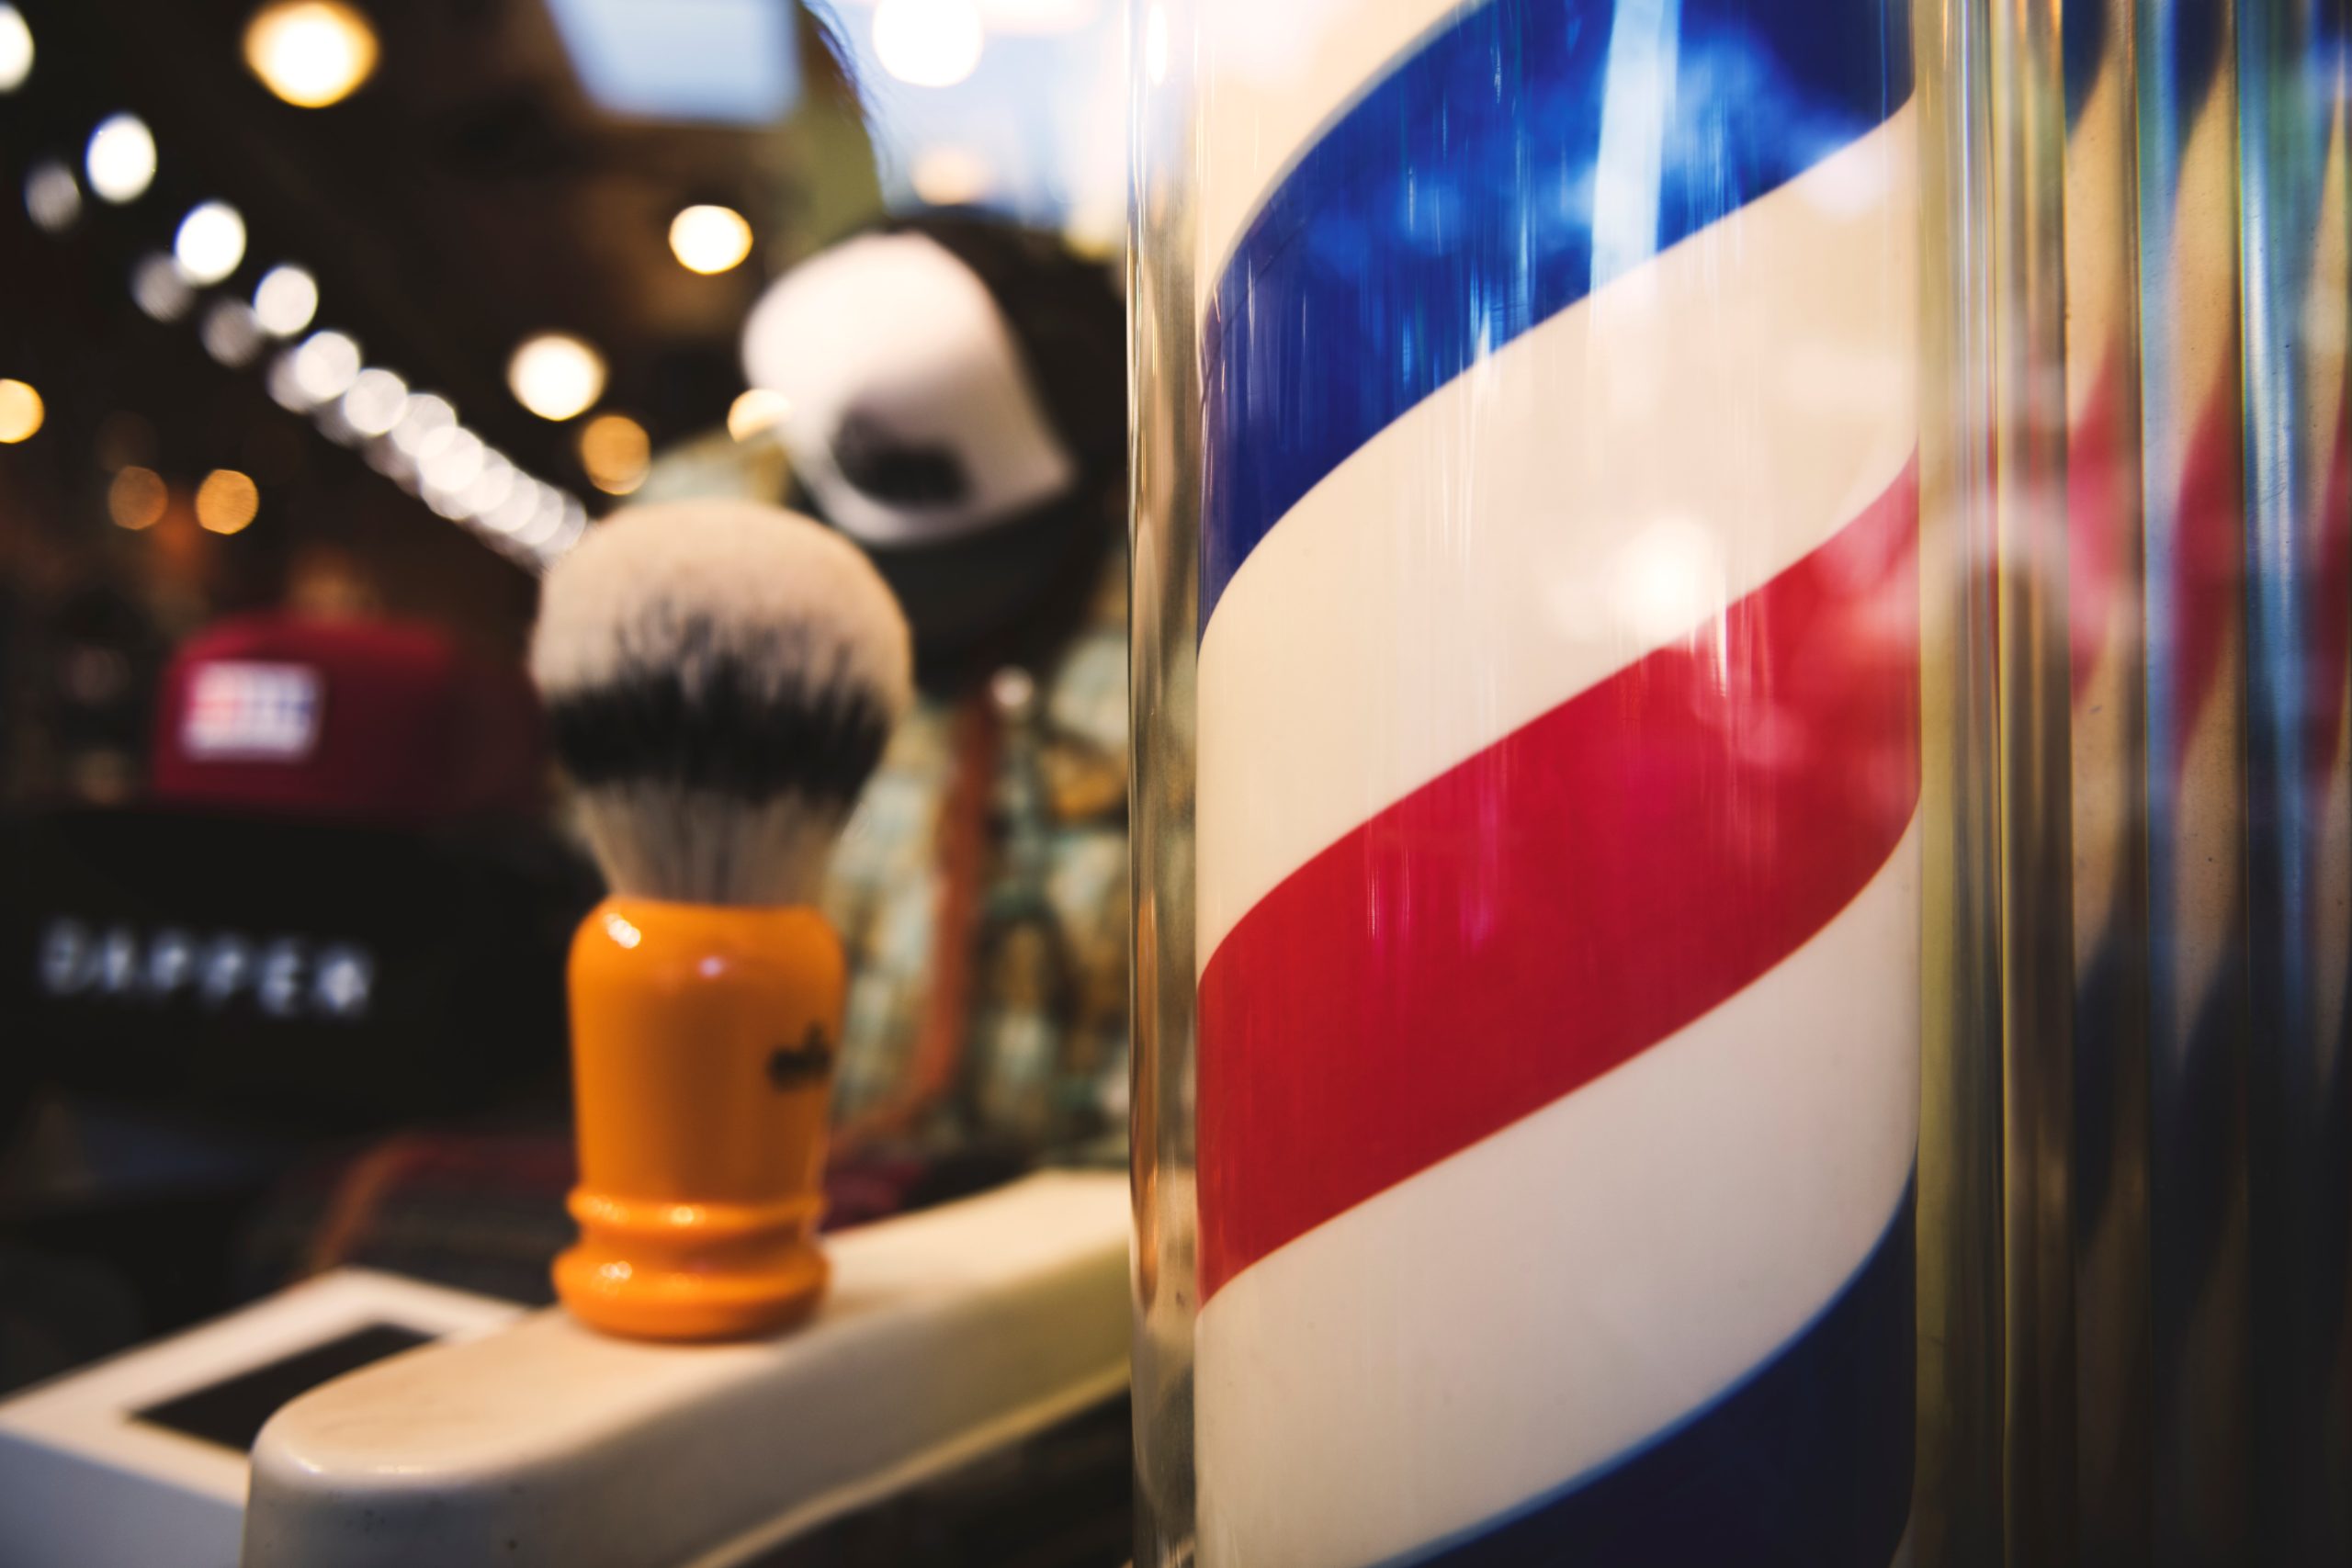 escola de barbeiros e barbearia a venda em florianopolis santa catarina prandisa negocios comprar vender empresas compra venda